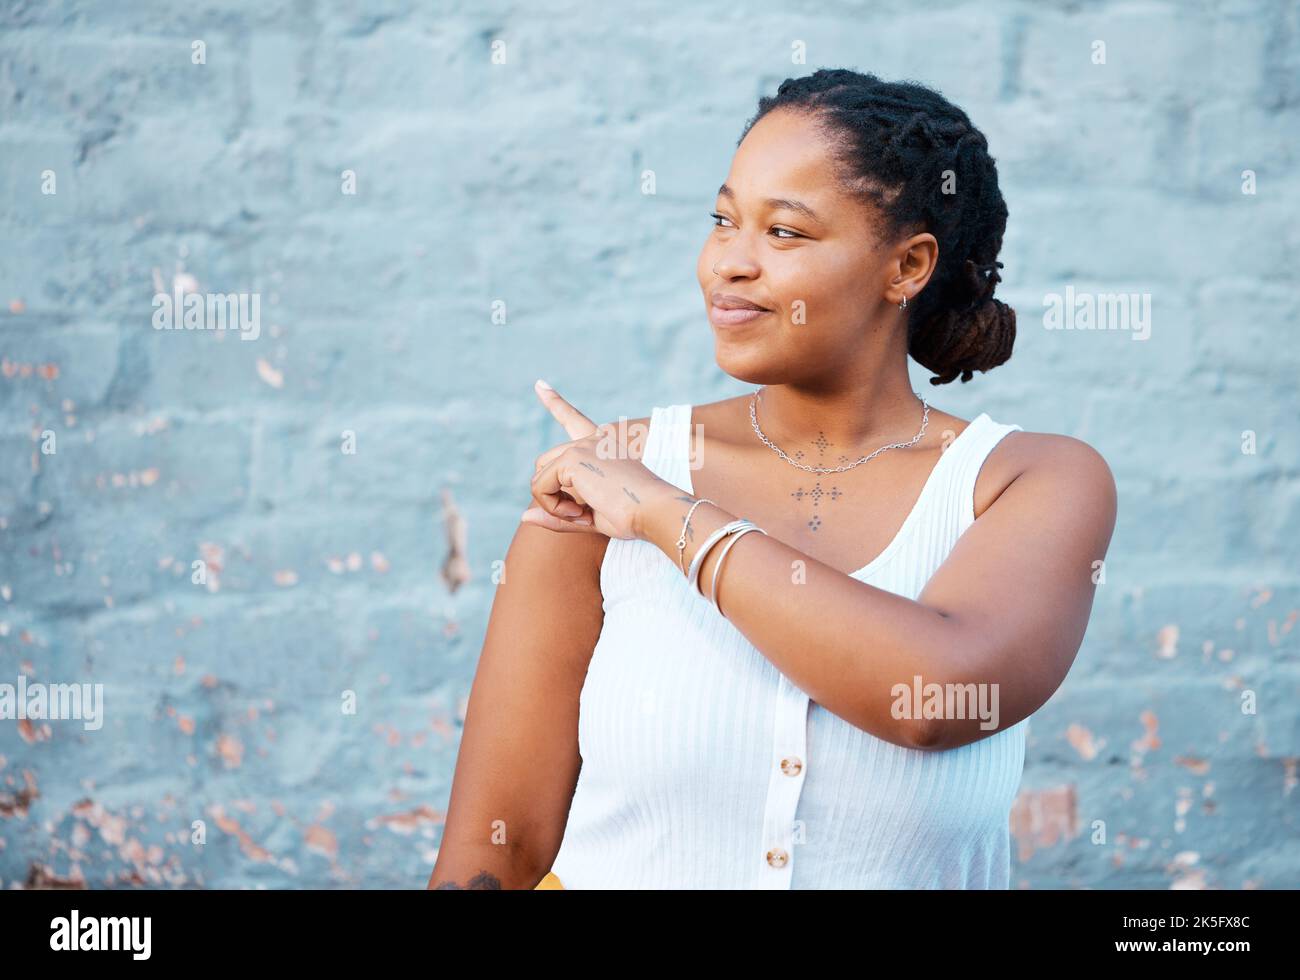 Femme noire pointant le doigt pour montrer la publicité, la promotion ou la maquette commerciale, espace de marketing sur le mur bleu extérieur gen z, style de vie des jeunes. Fille africaine Banque D'Images